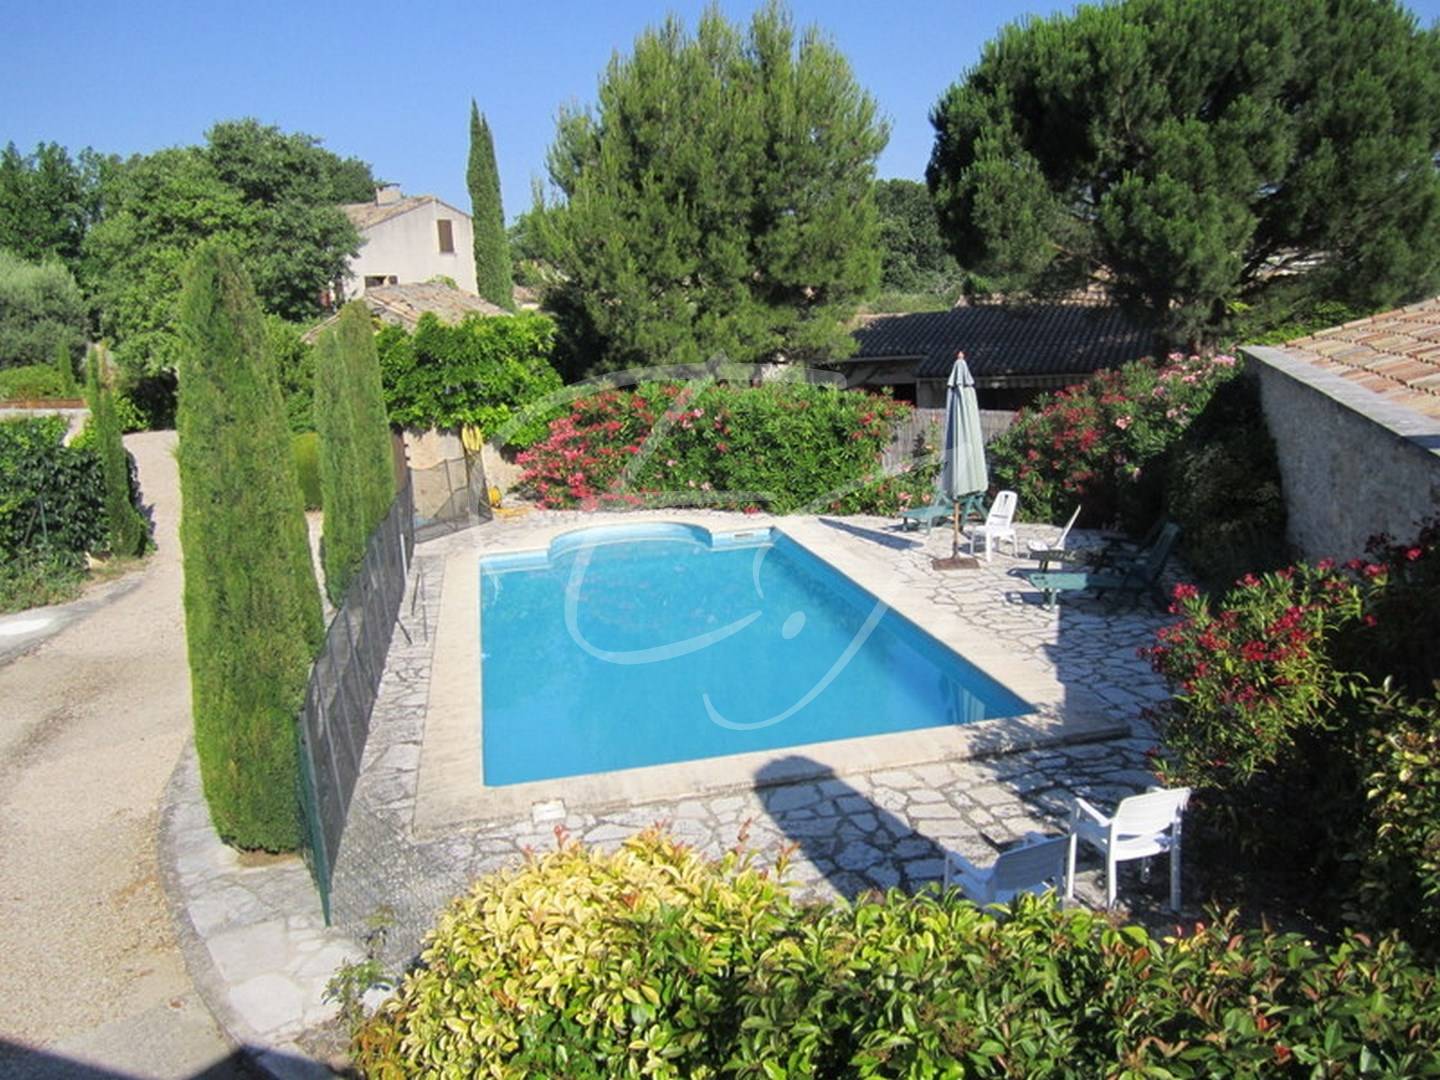 PLUS A LA VENTE - en plein centre du village de Robion belle propriété avec appartement indépendant et piscine